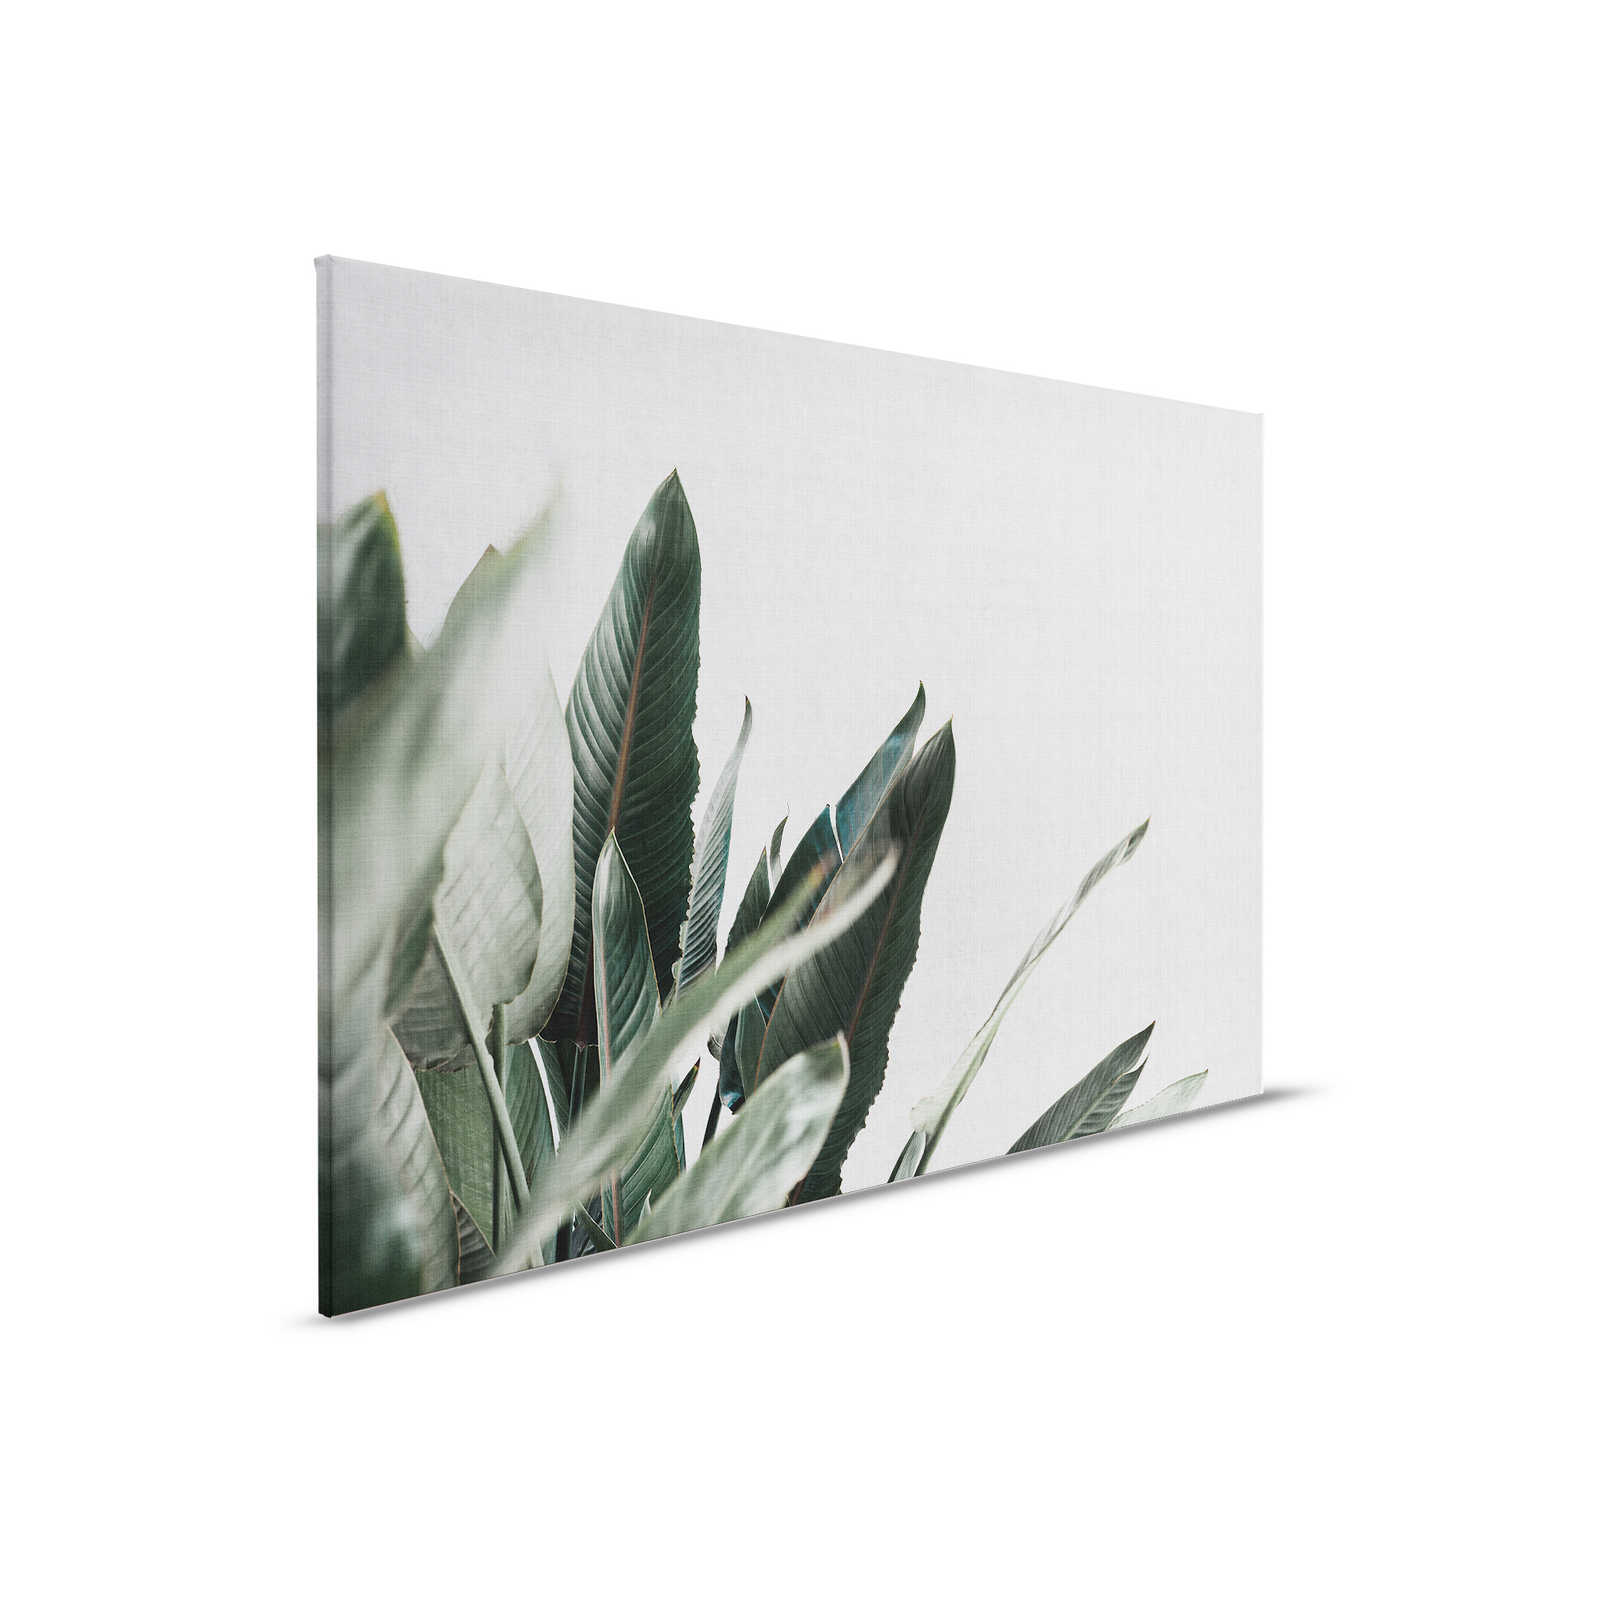 Jungla urbana 1 - Cuadro en lienzo con hojas de palmera en aspecto de lino natural - 0,90 m x 0,60 m
